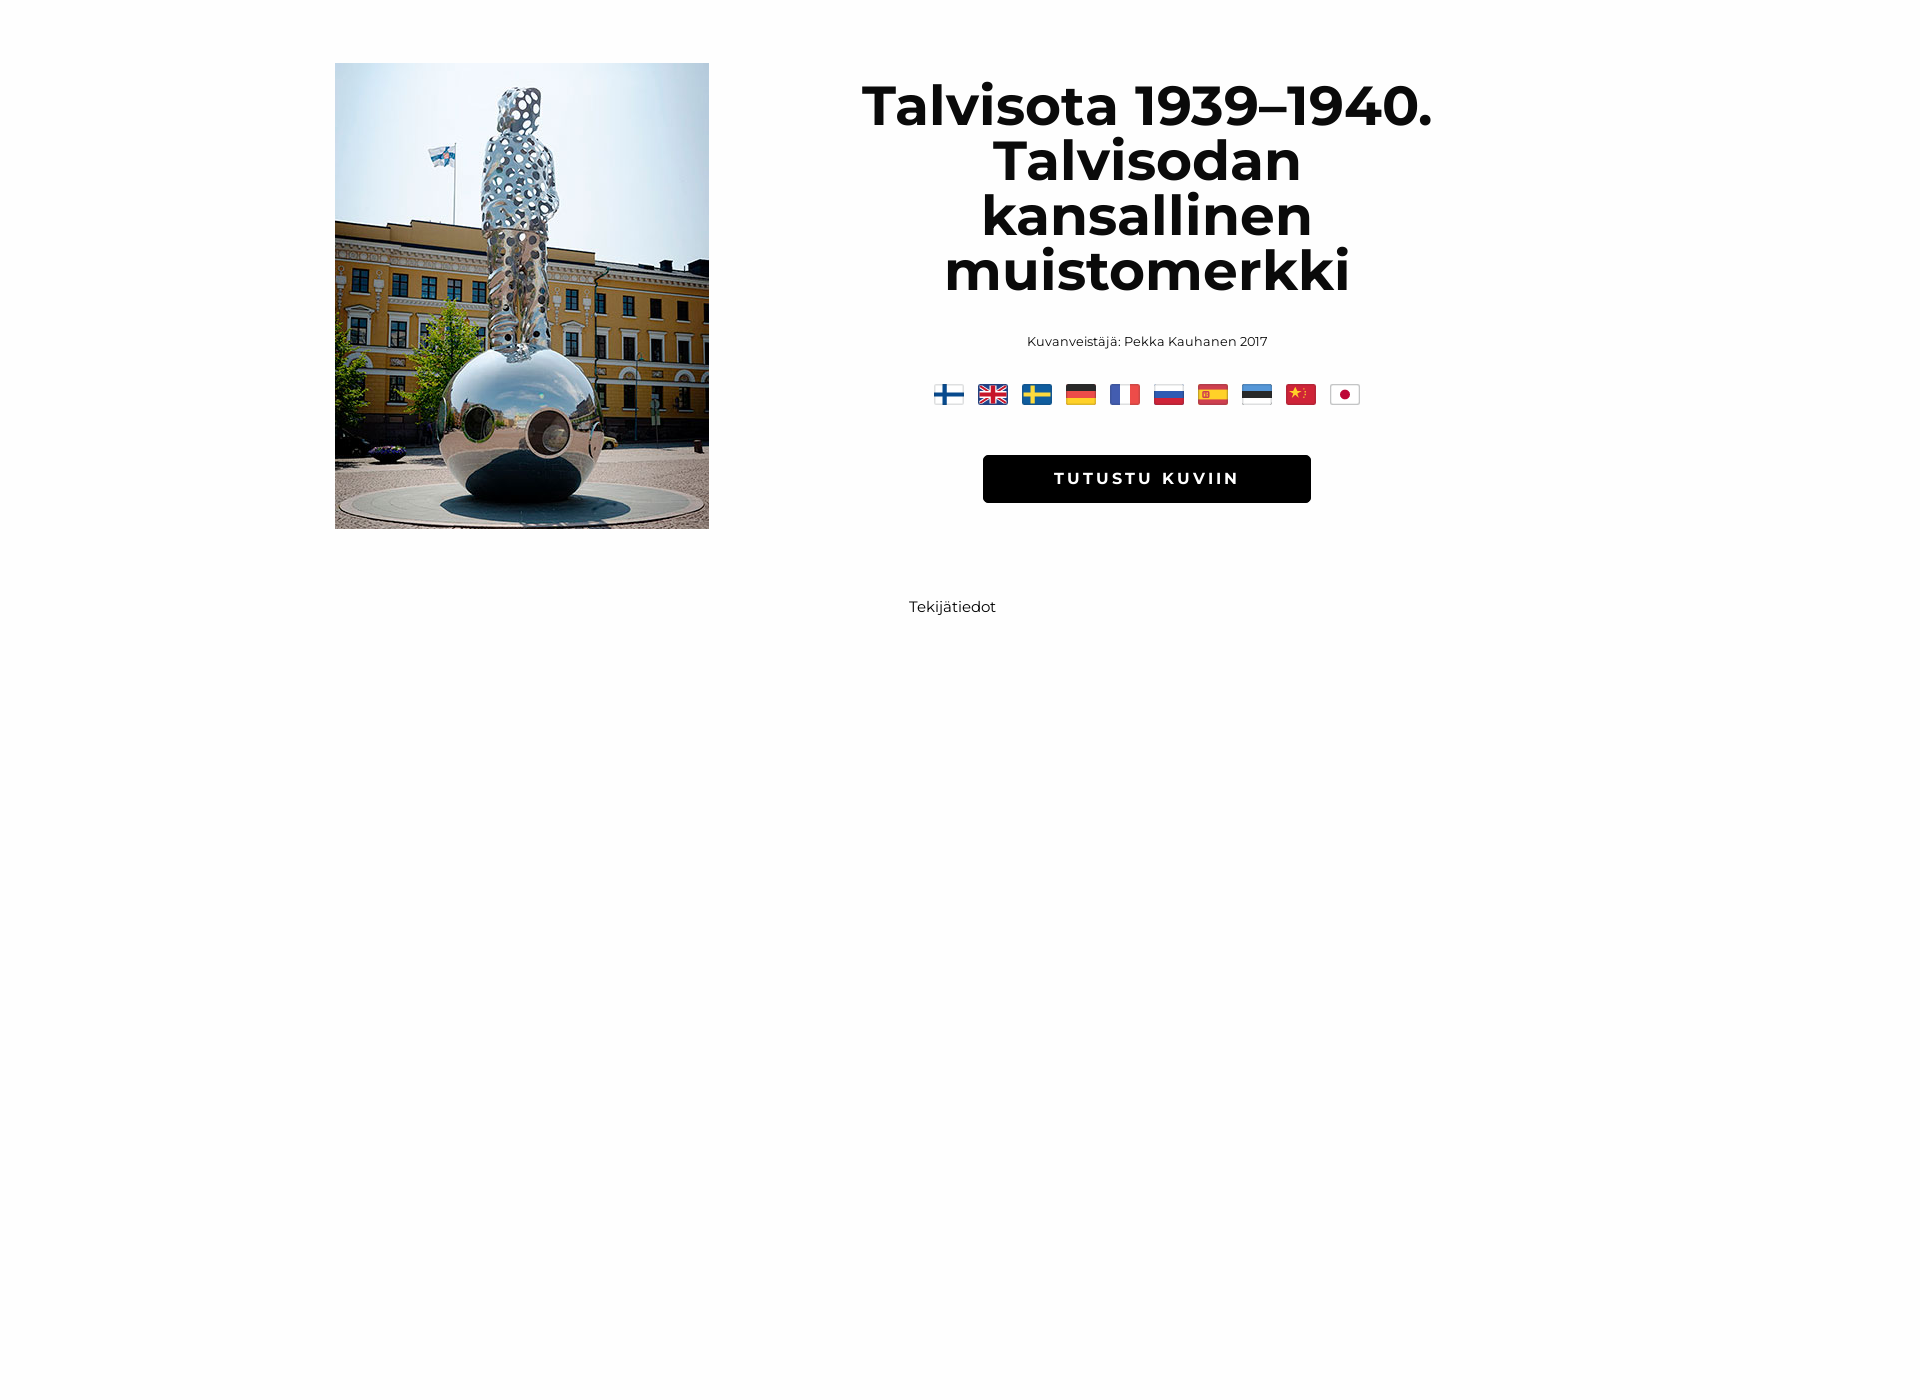 Näyttökuva 1939-1940.fi